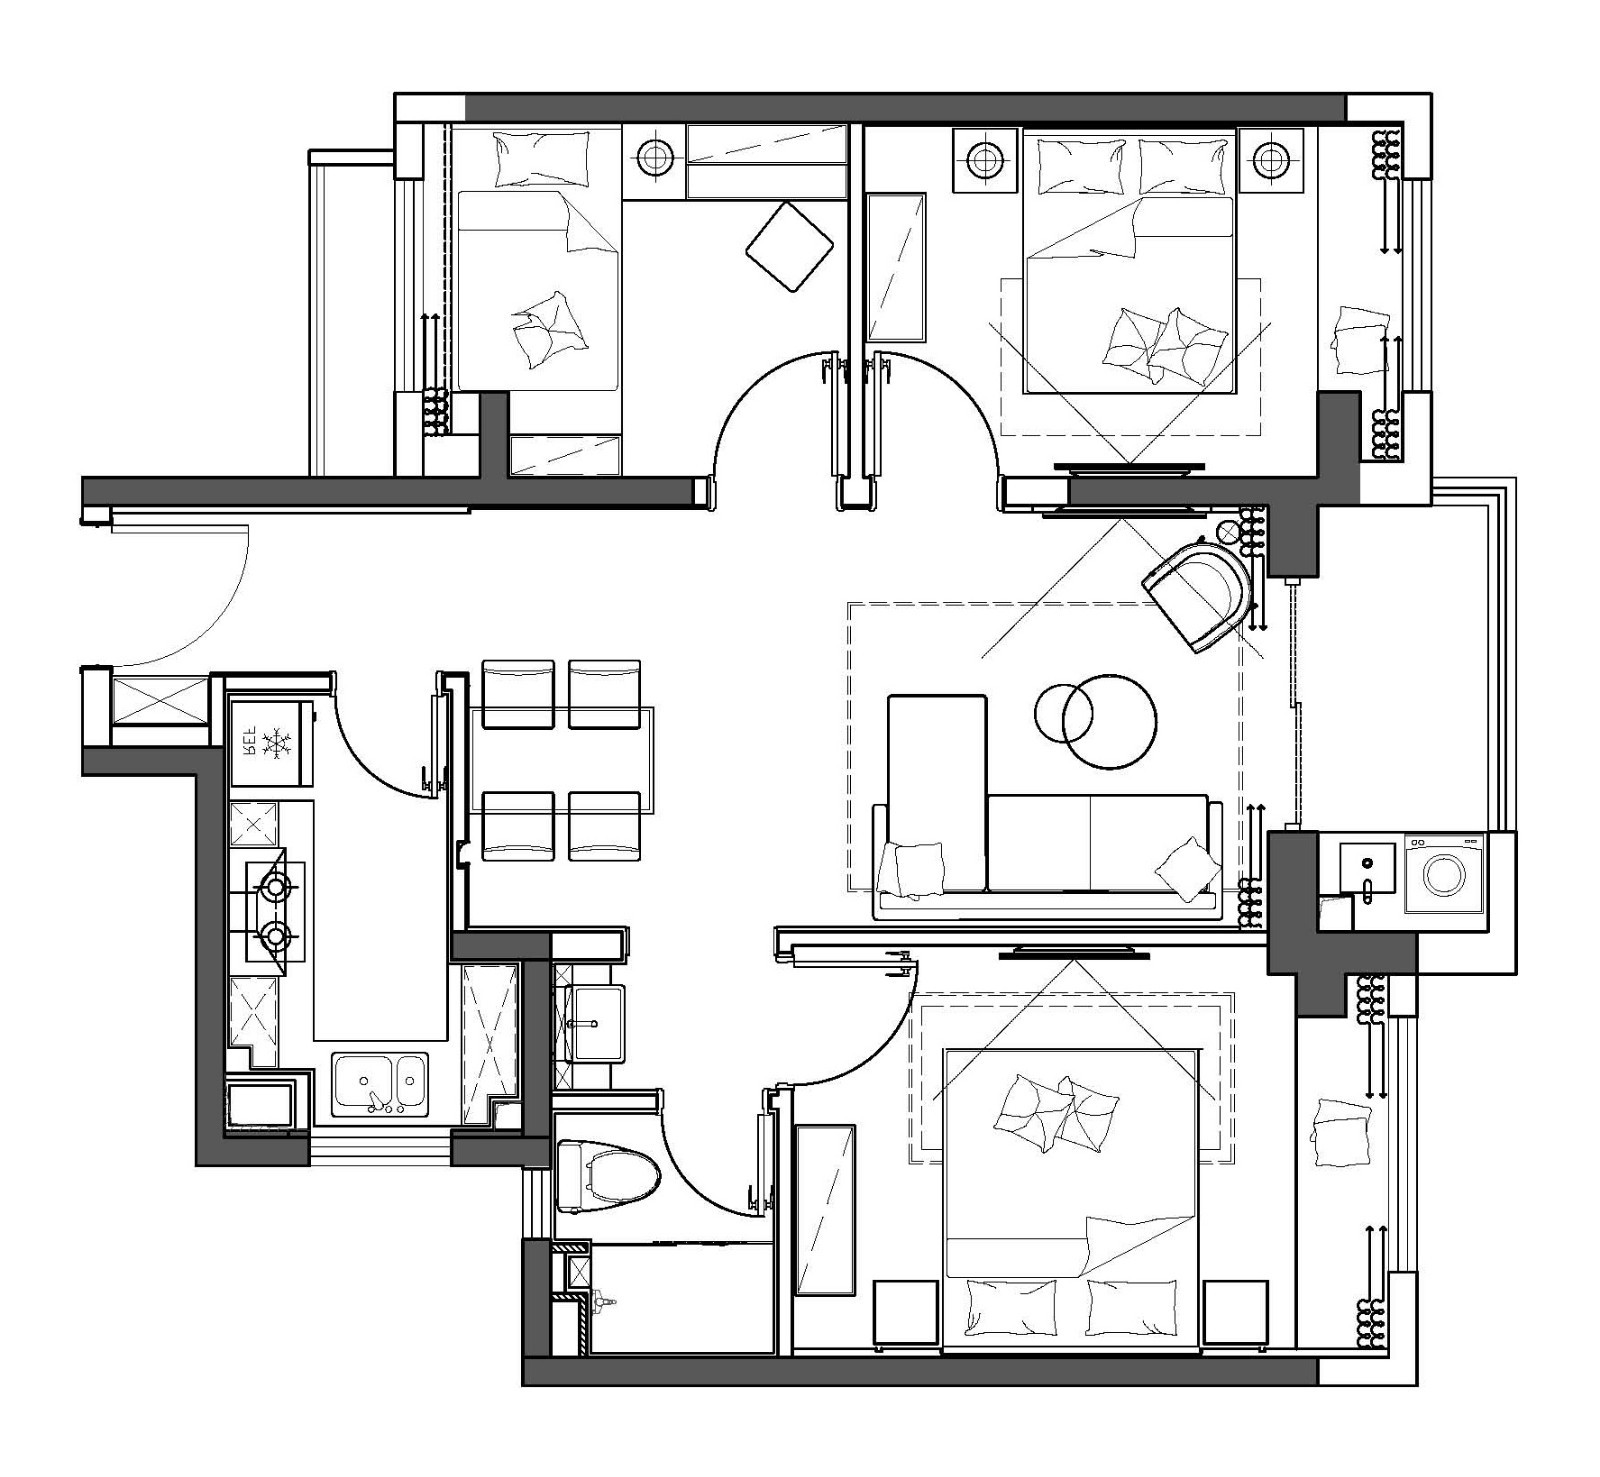 120现代三房装修效果图,家是精神的「庇护所」装修案例效果图-美广网(图1)